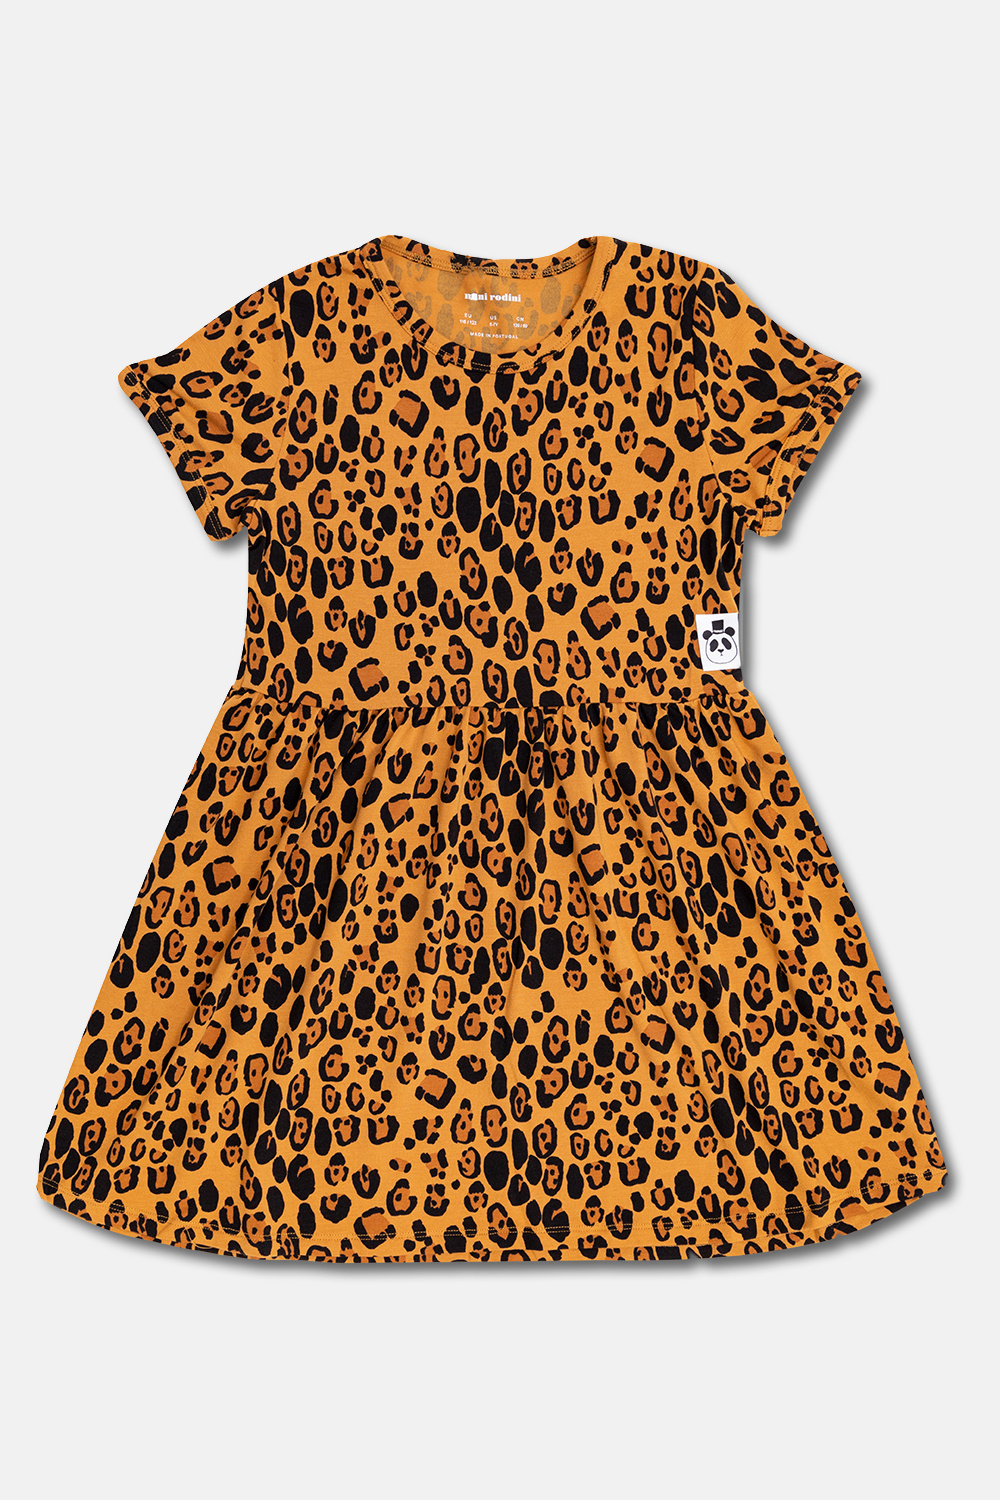 Mini Rodini Leopard-print dress